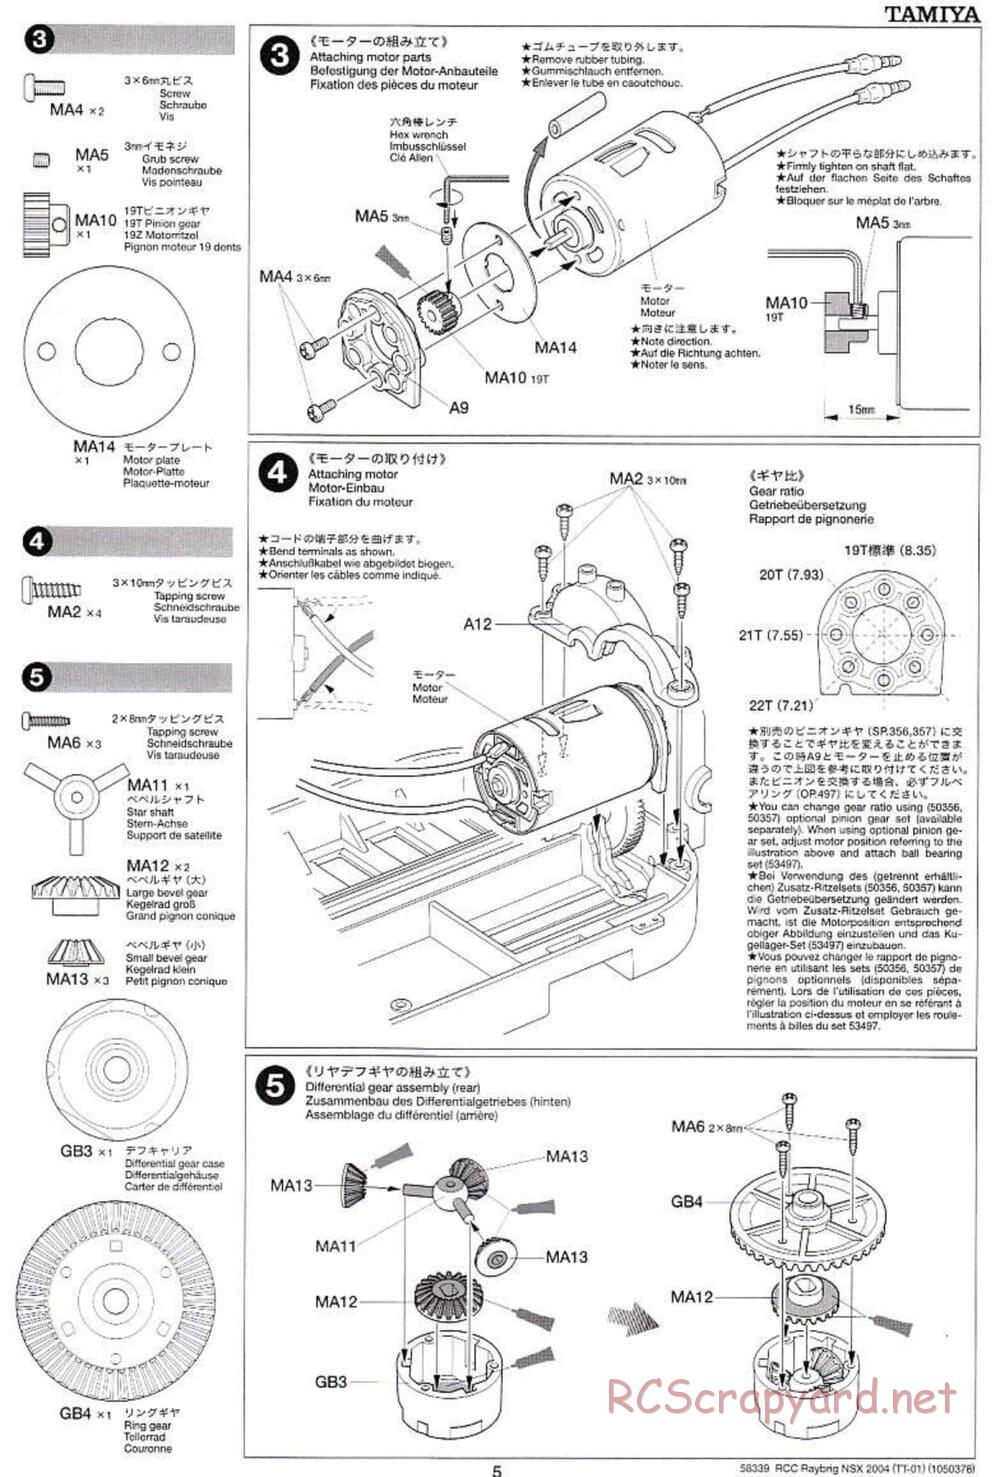 Tamiya - Raybrig NSX 2004 Chassis - Manual - Page 5